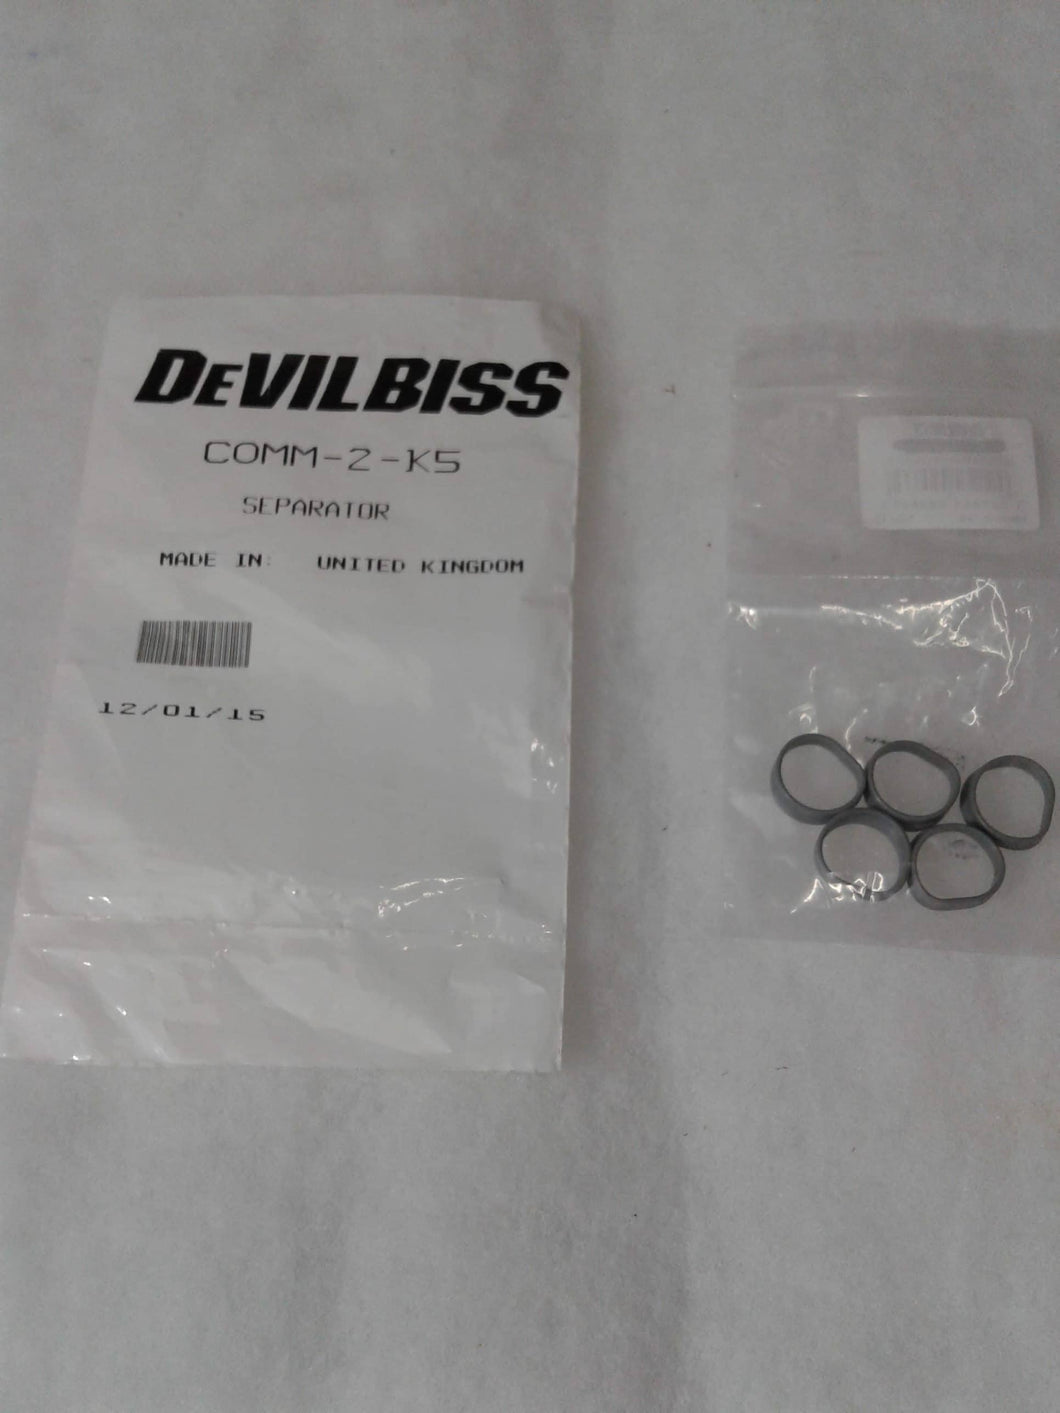 Devilbiss COMM-2-K5 Separator